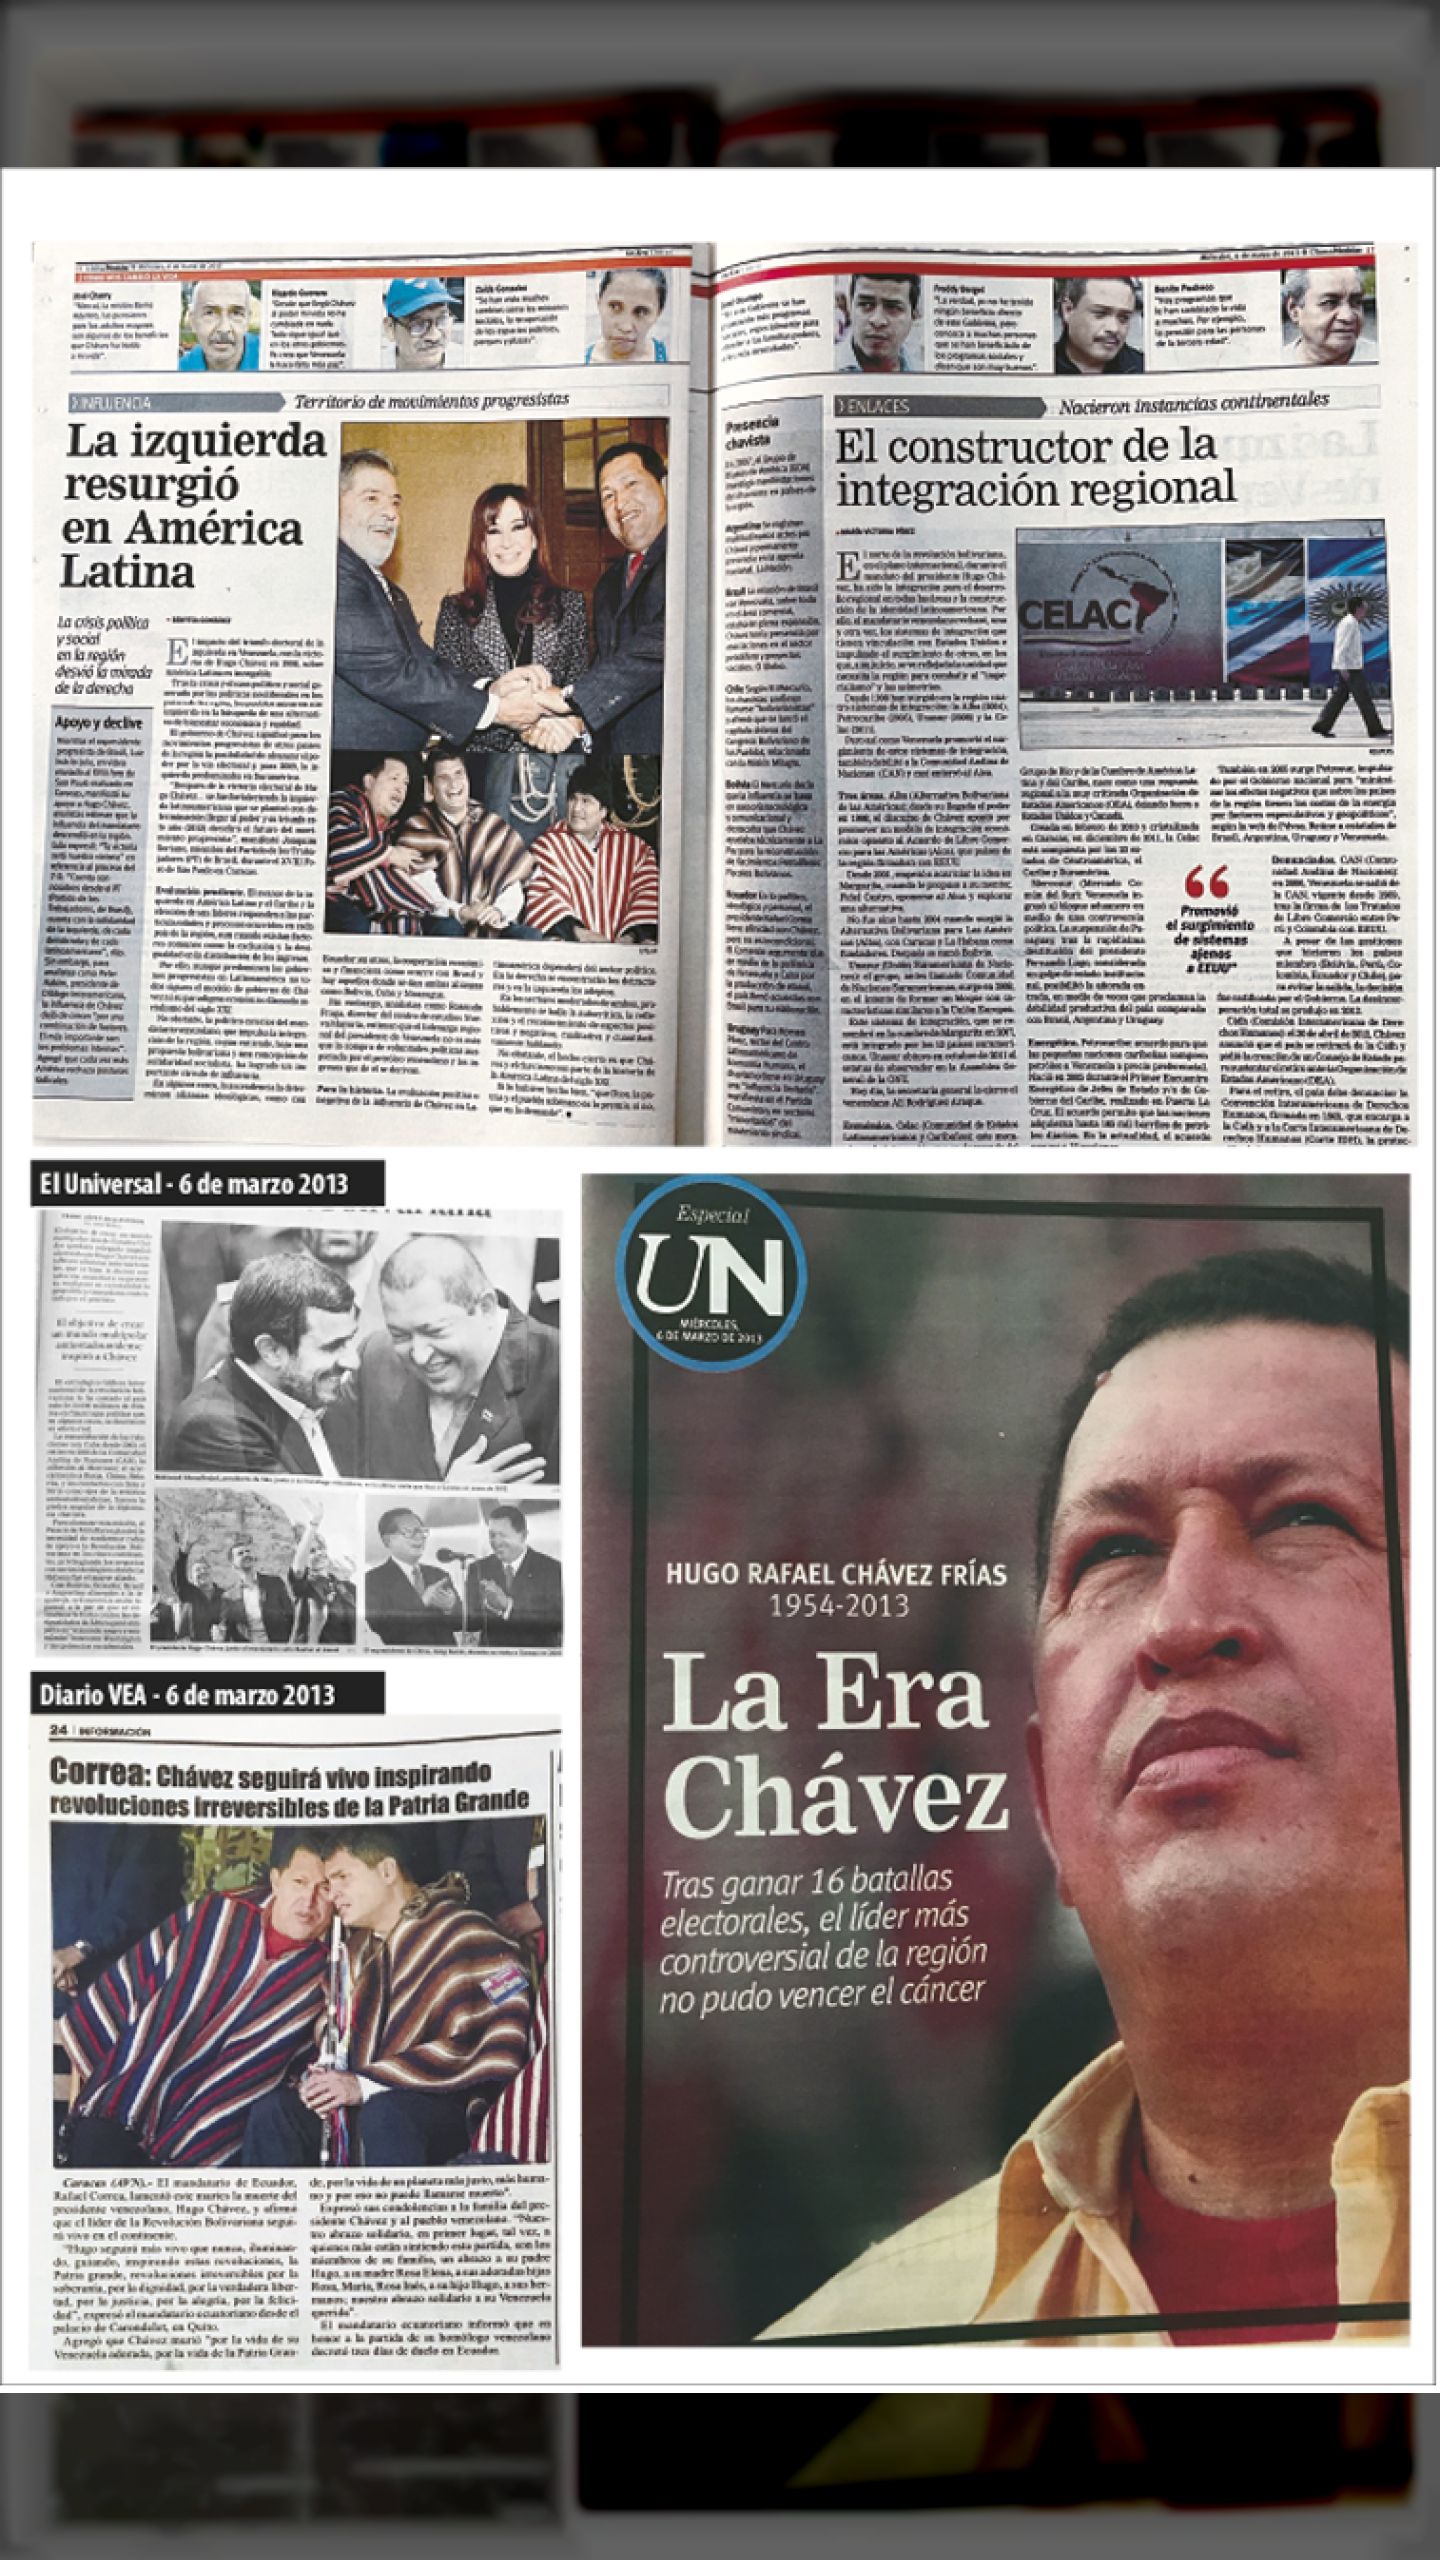 CHÁVEZ CONSTRUCTOR DE LA UNIDAD LATINOAMERICANA (ÚLTIMAS NOTICIAS, 6 de marzo 2013)